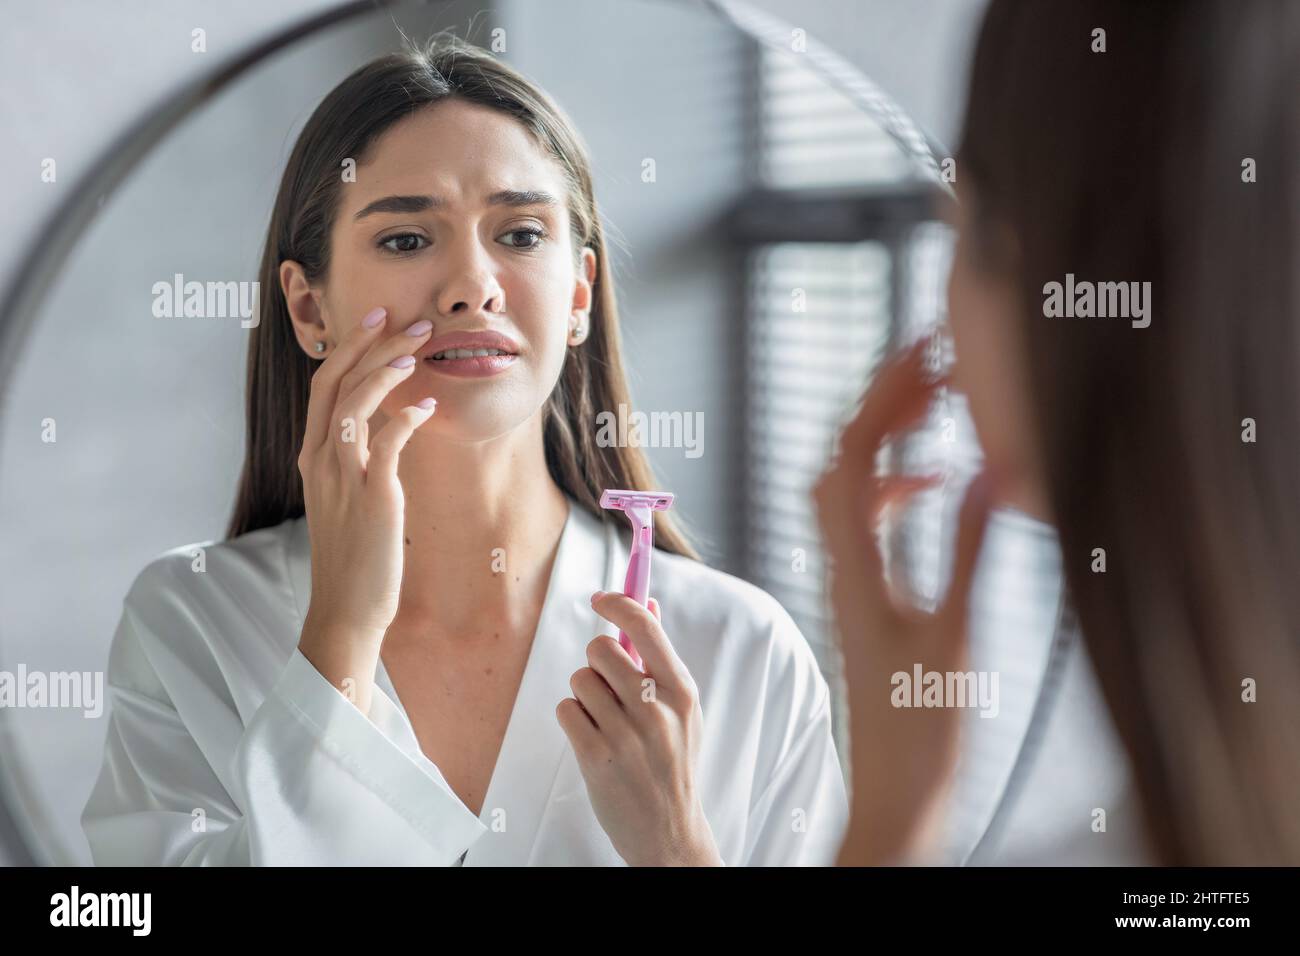 Gesichtshaardepilation. Verwirrt Lady Mit Rasiermesser In Der Hand Blick Auf Spiegel Stockfoto